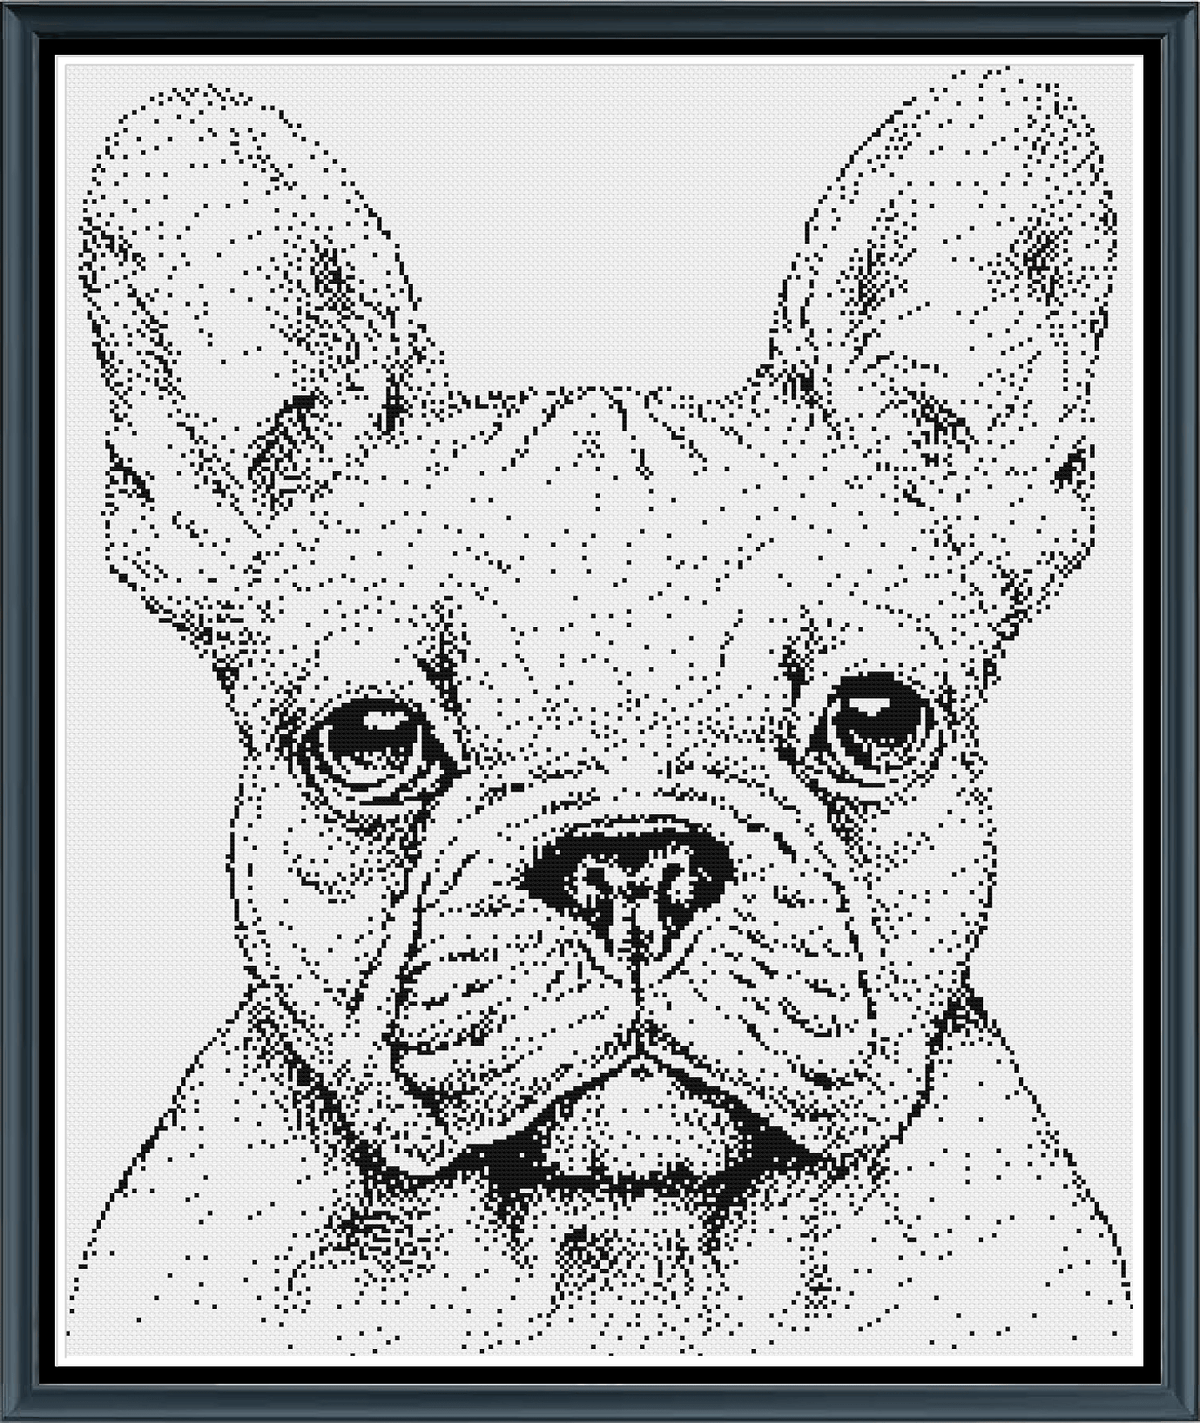 Stitching Jules Design Cross Stitch Pattern French Bulldog Monochrome Cross Stitch Embroidery Needlepoint Pattern PDF Download